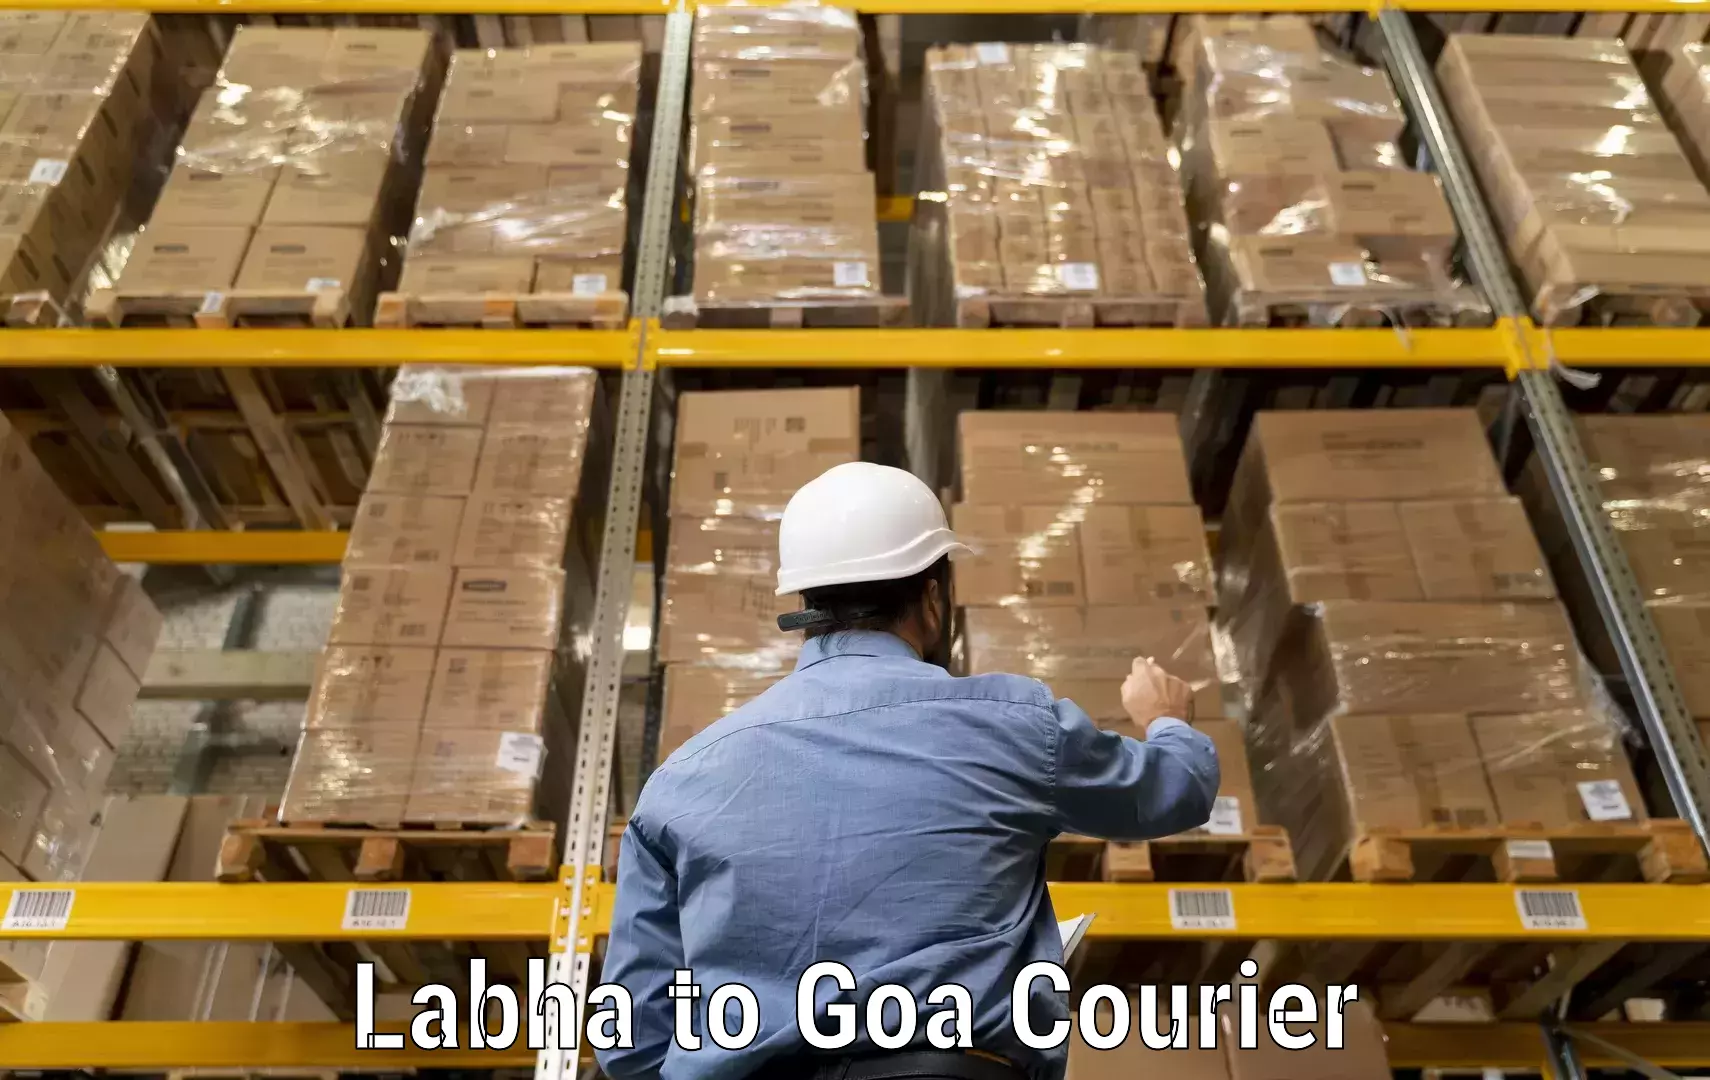 24-hour courier service Labha to Vasco da Gama